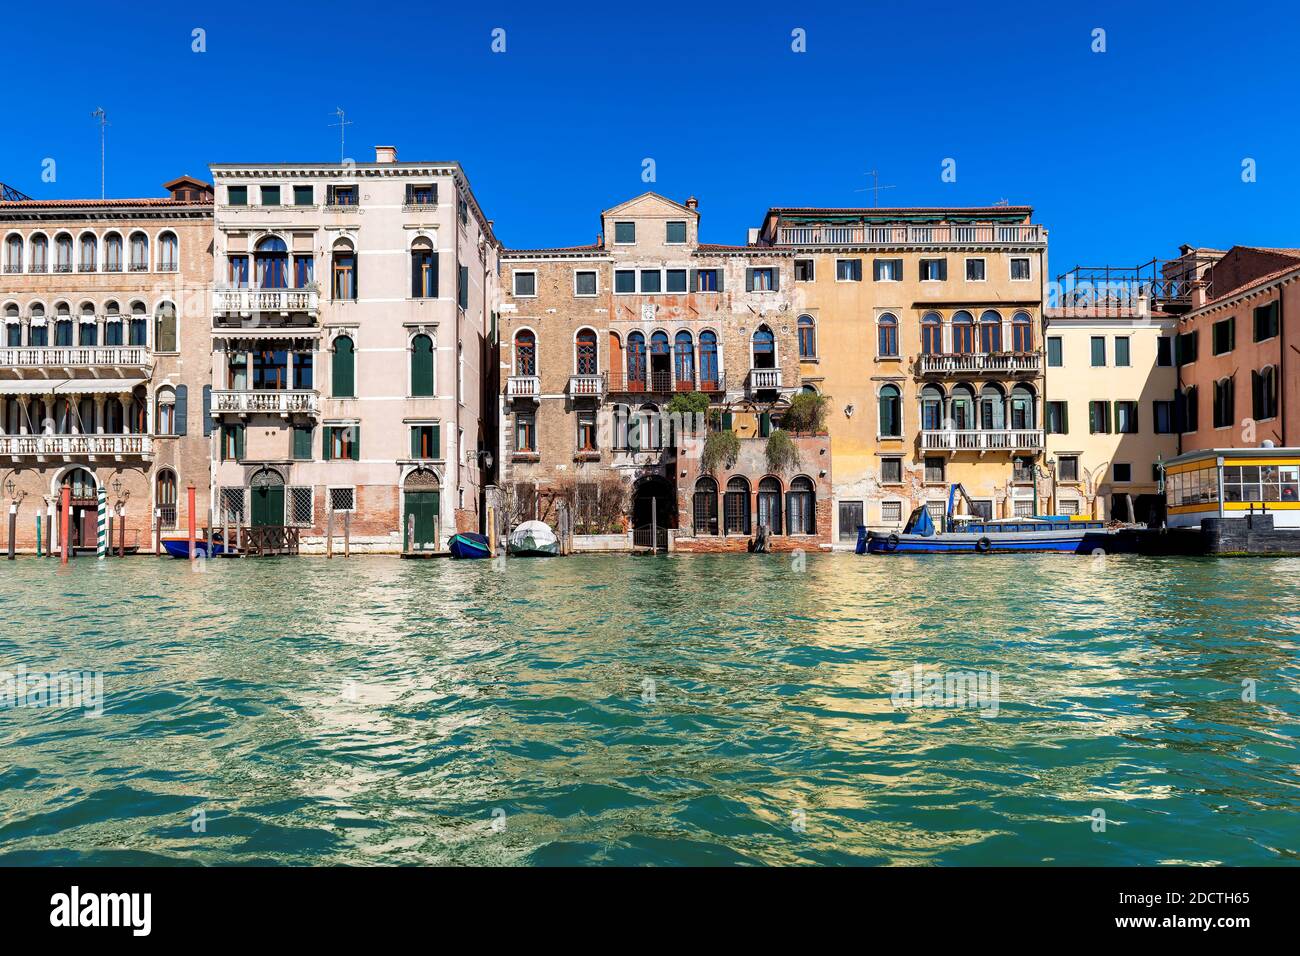 Architettura del canale veneziano a Venezia Foto Stock